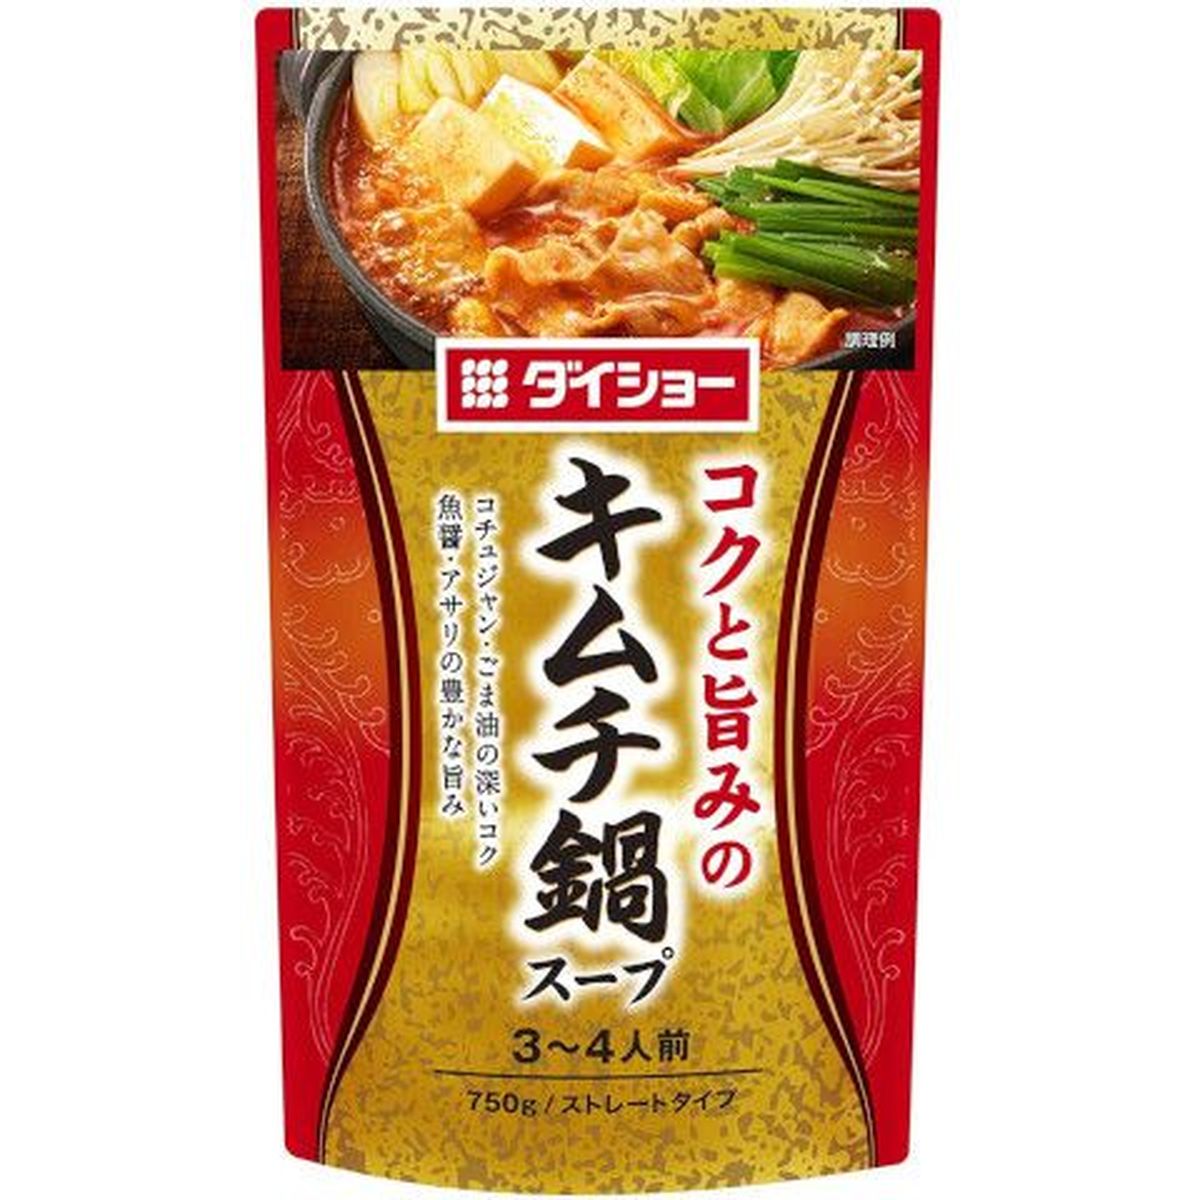 【10個入リ】ダイショー キムチ鍋スープ R20 750g